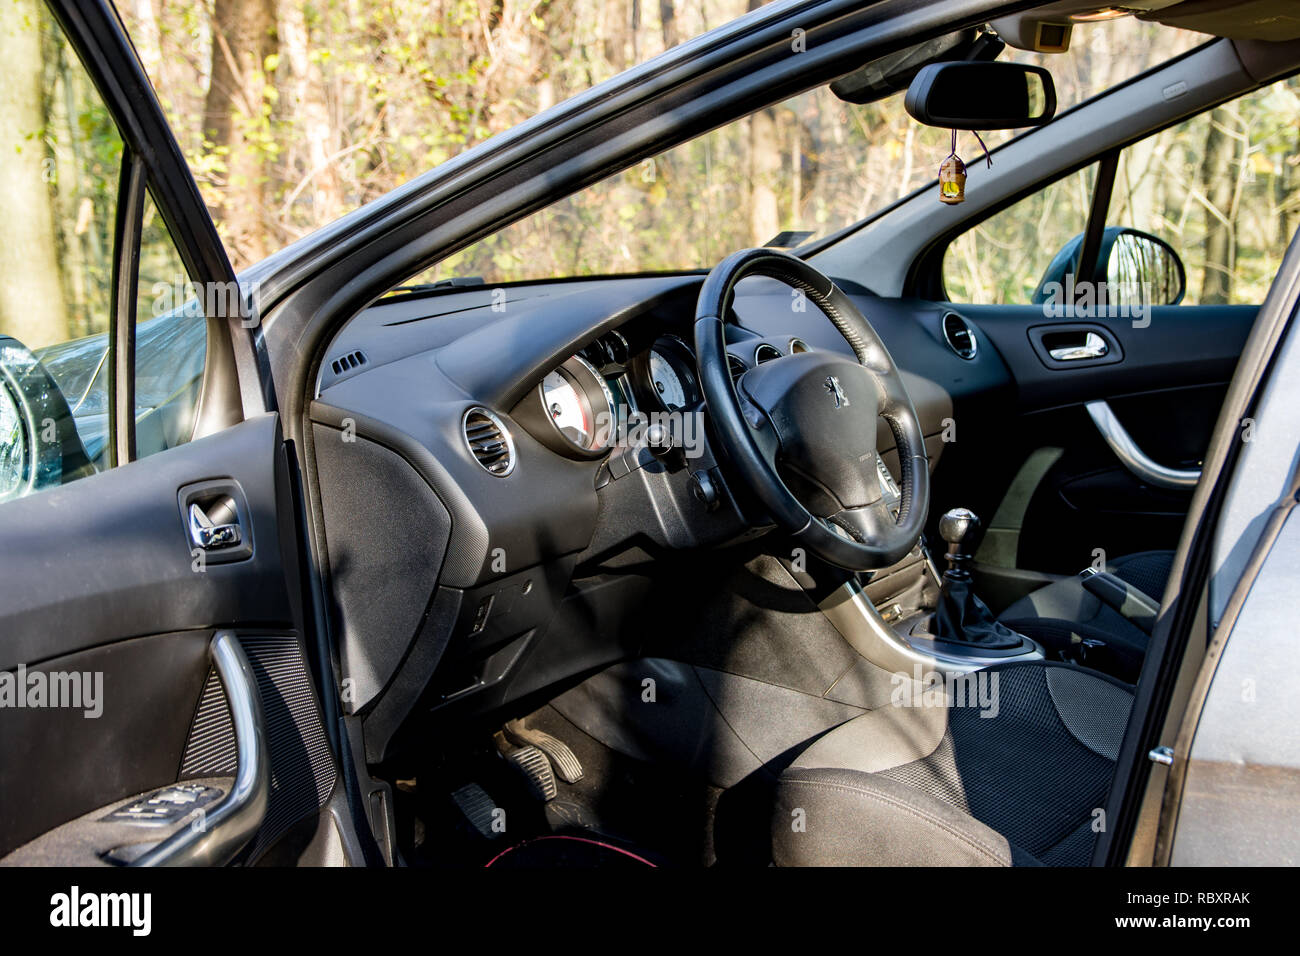 Belgrade, Serbie - 11.21.2018 / images de l'intérieur d'une Peugeot 308 HDI, stationné sur le chemin Mountain, près de la forêt. Joli design d'une planche de bord Banque D'Images